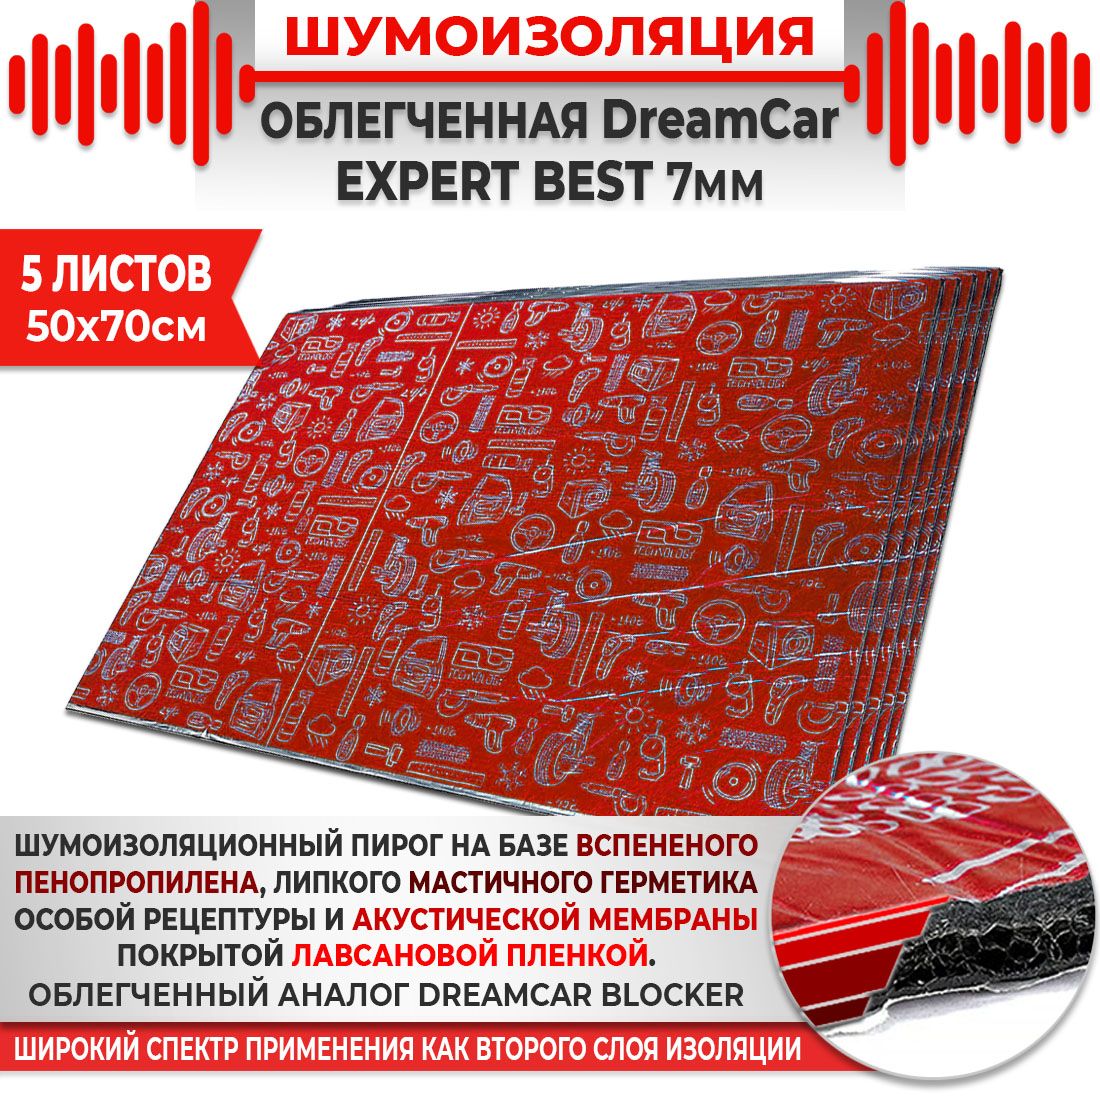 5шт. Шумоизоляция 4х слойная DreamCar Expert Best  7мм 0.7х0.5м 5 листов